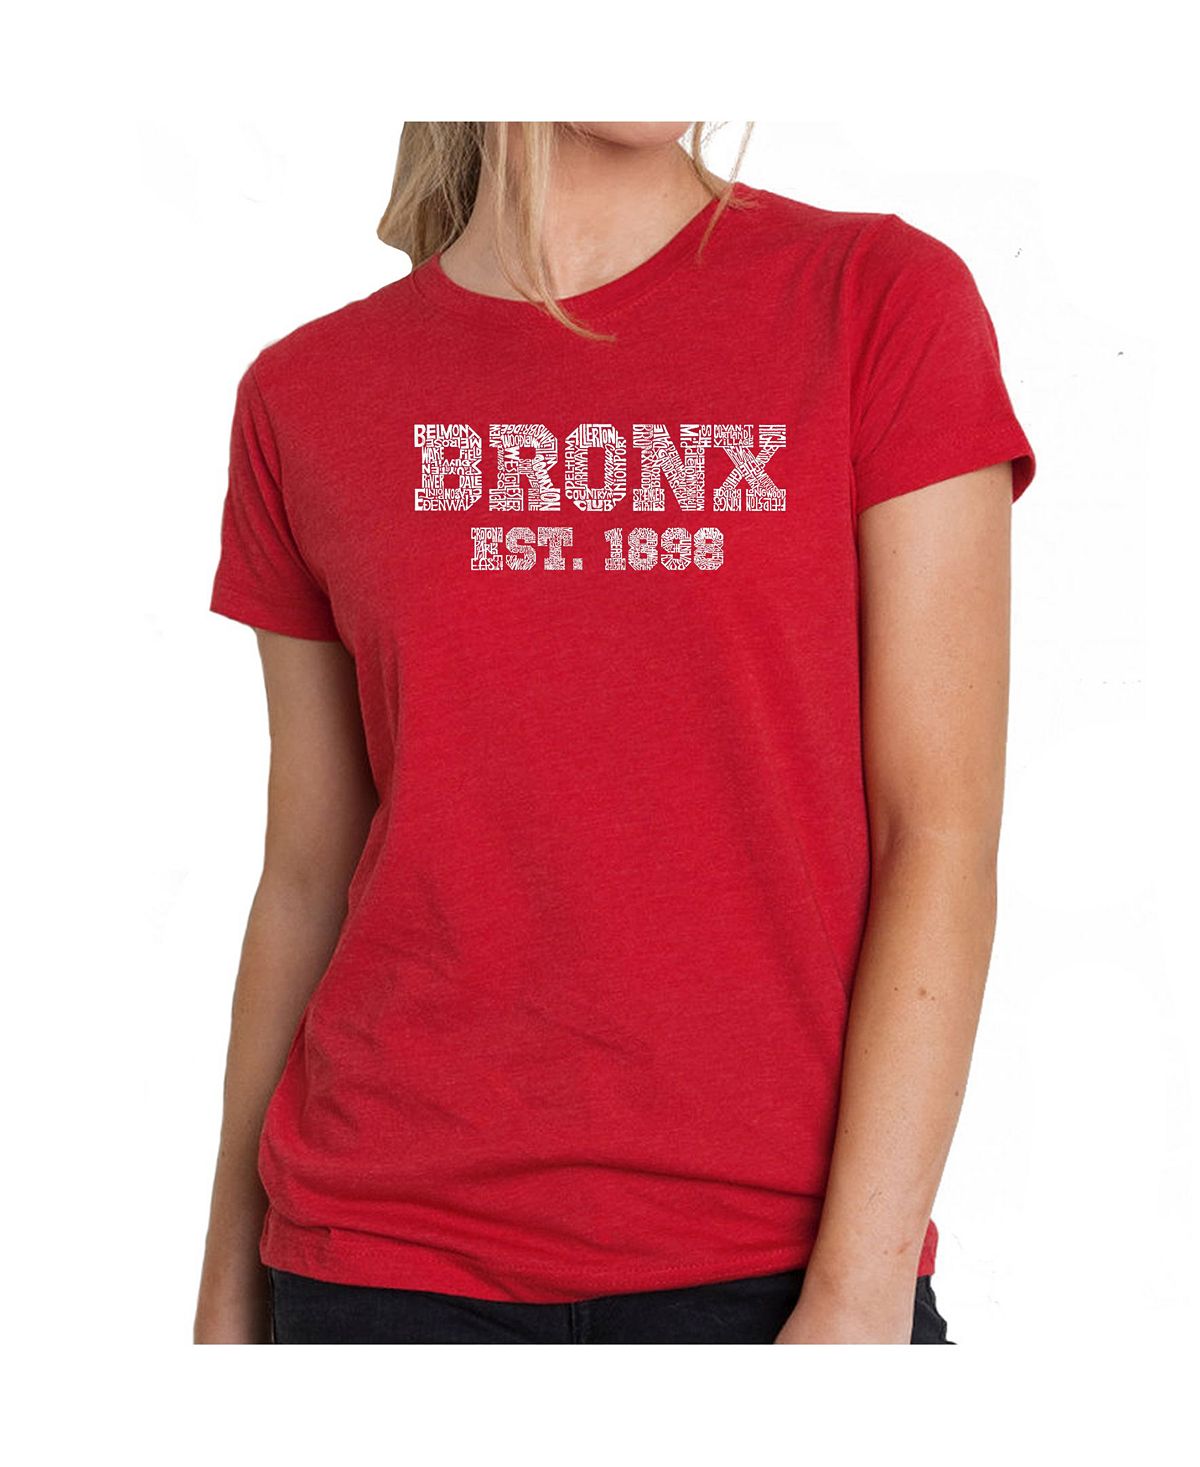 Женская футболка премиум-класса word art - популярные районы бронкса LA Pop Art, красный цена и фото